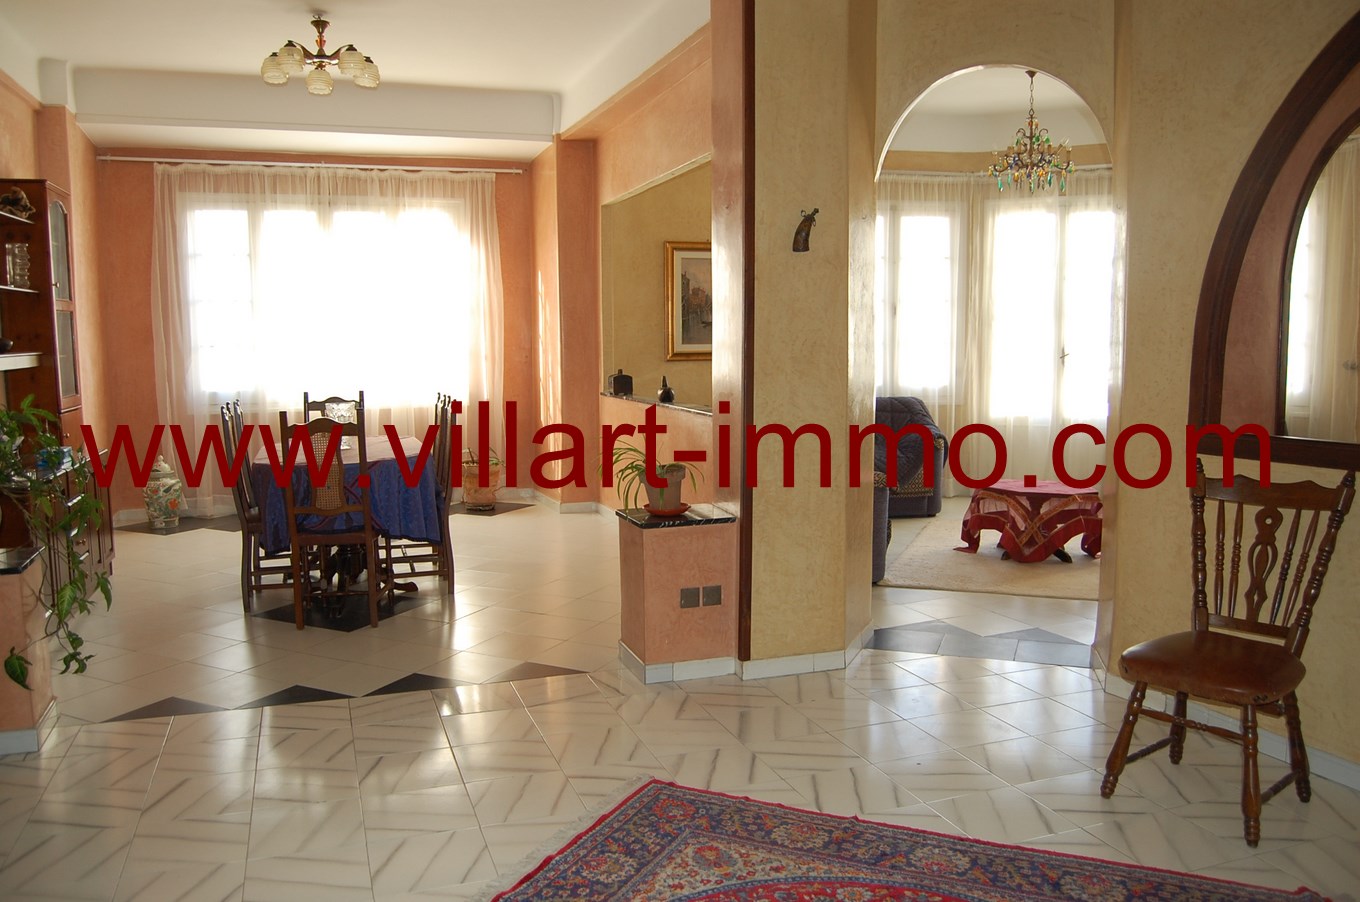 3-Location-Appartement-meublé-Tanger-salle à manger -L673-Villart-immo